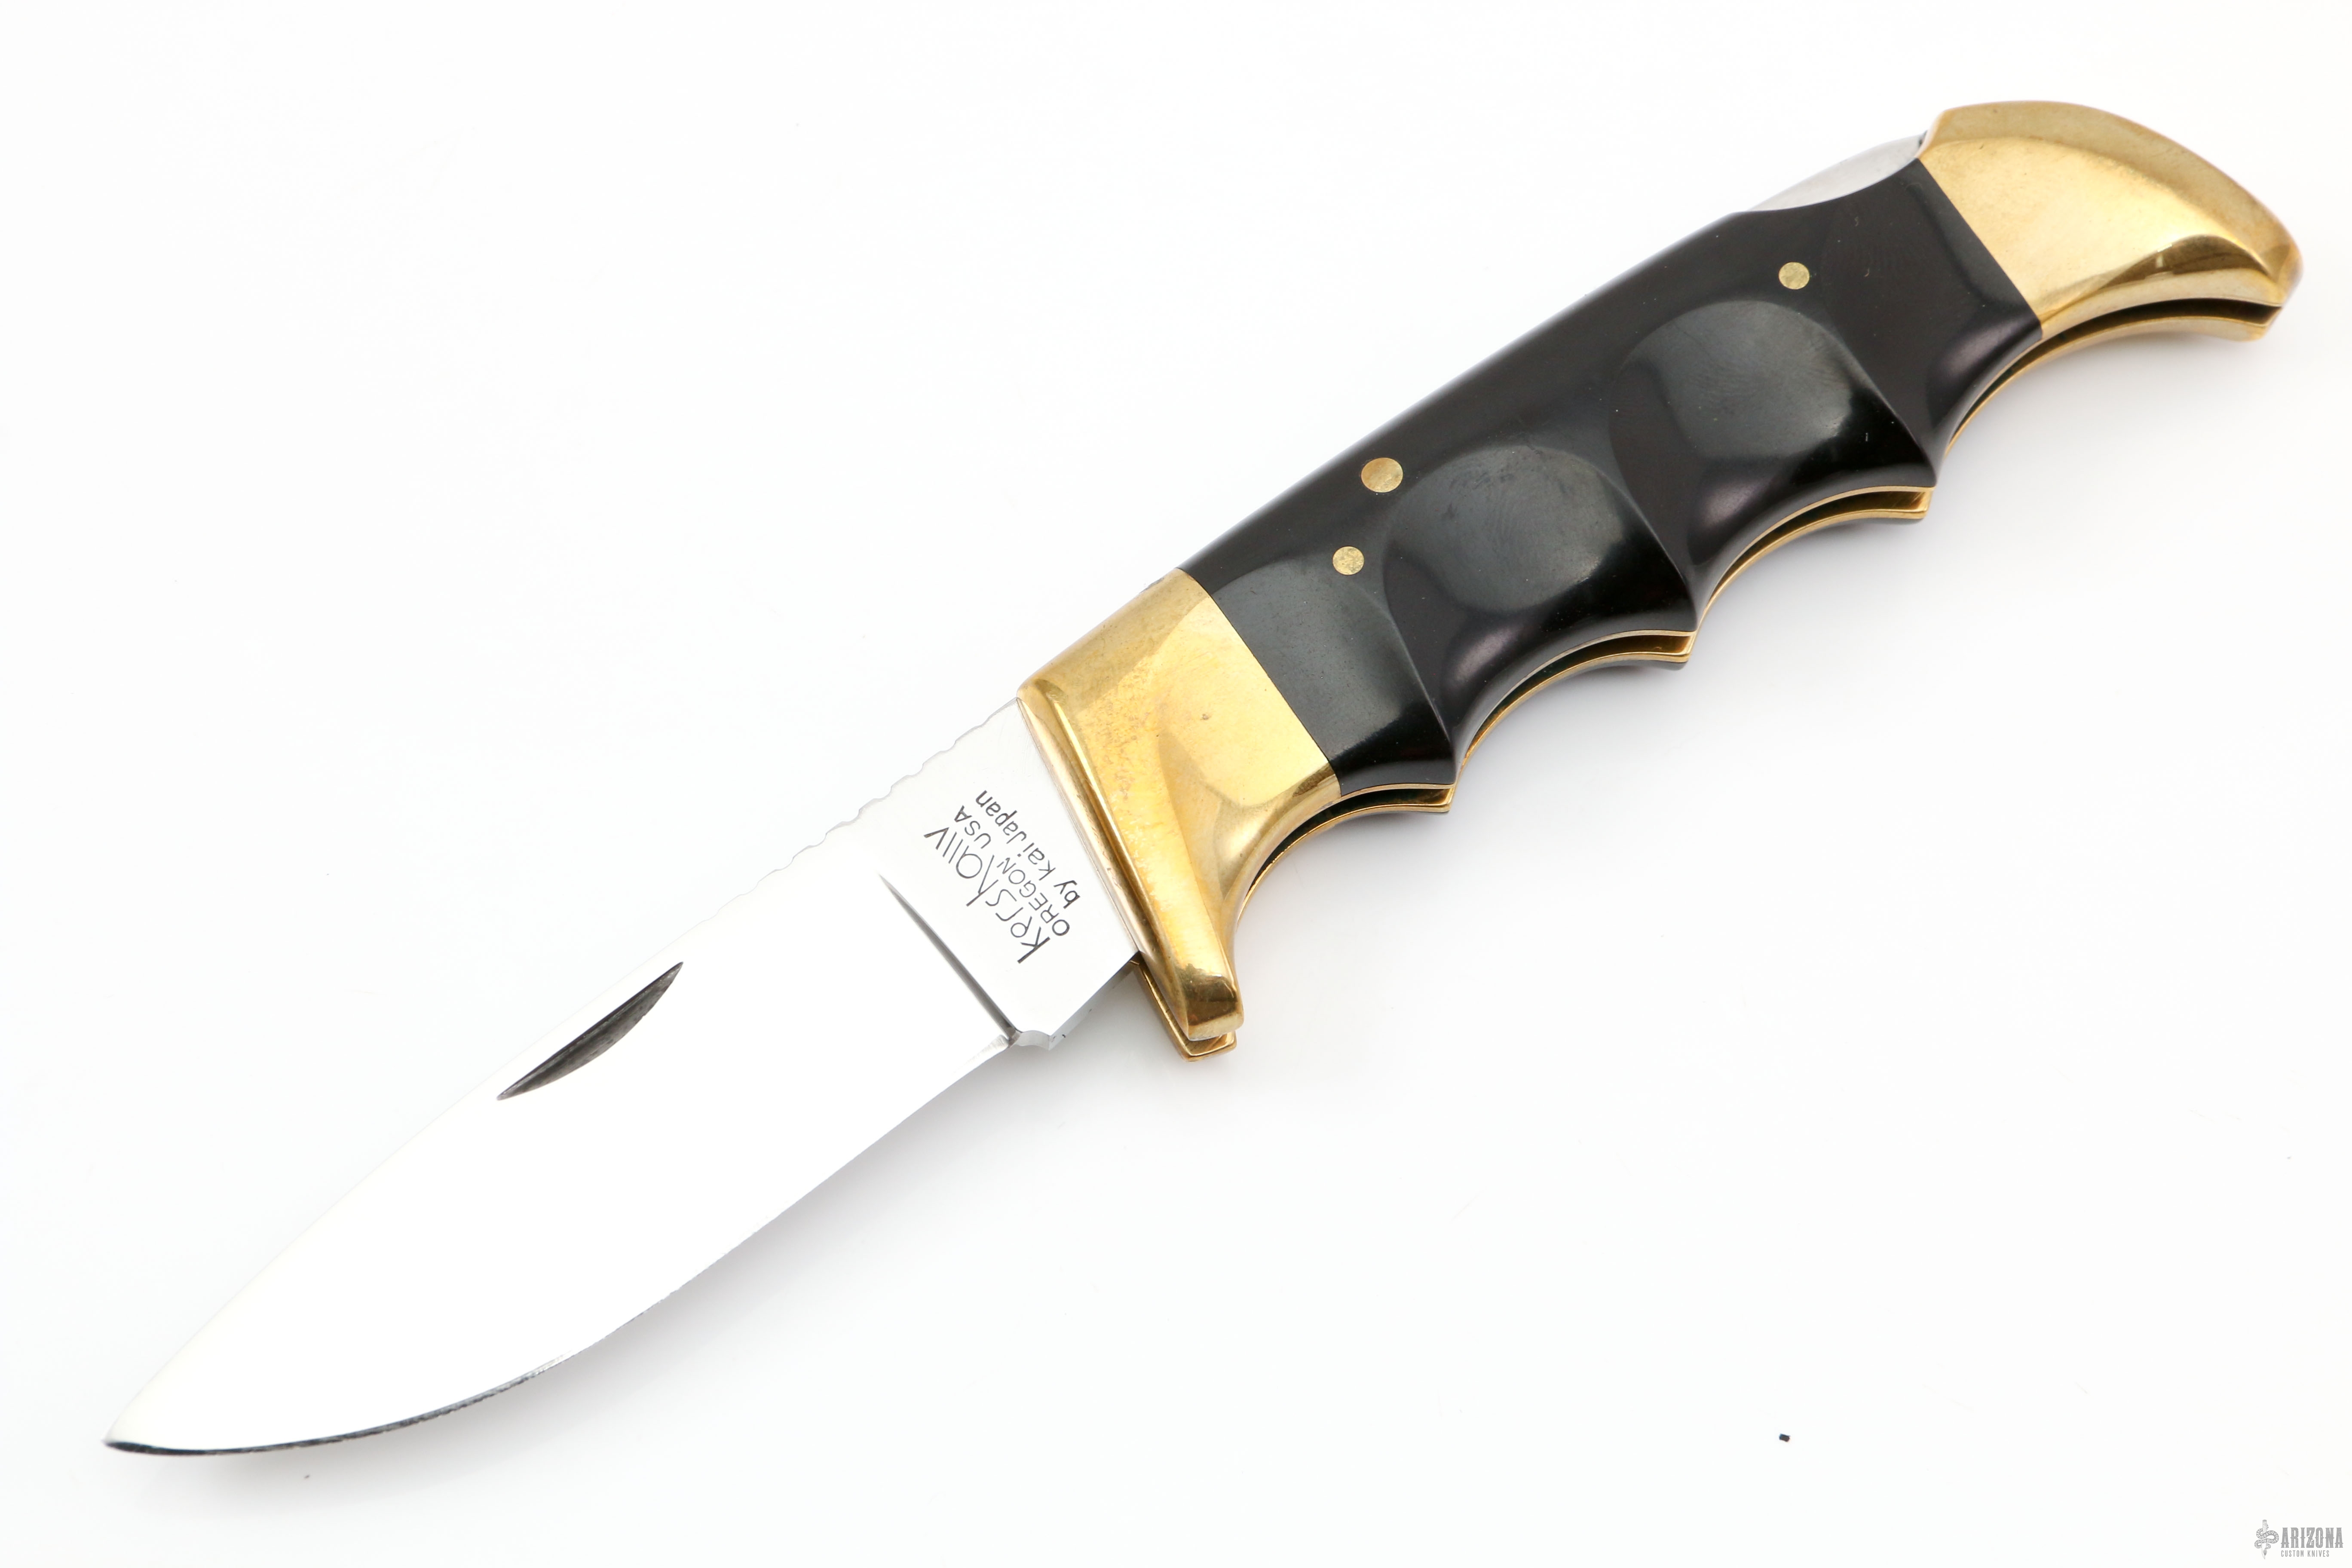 Folding Field Model 1050 | Arizona Custom Knives